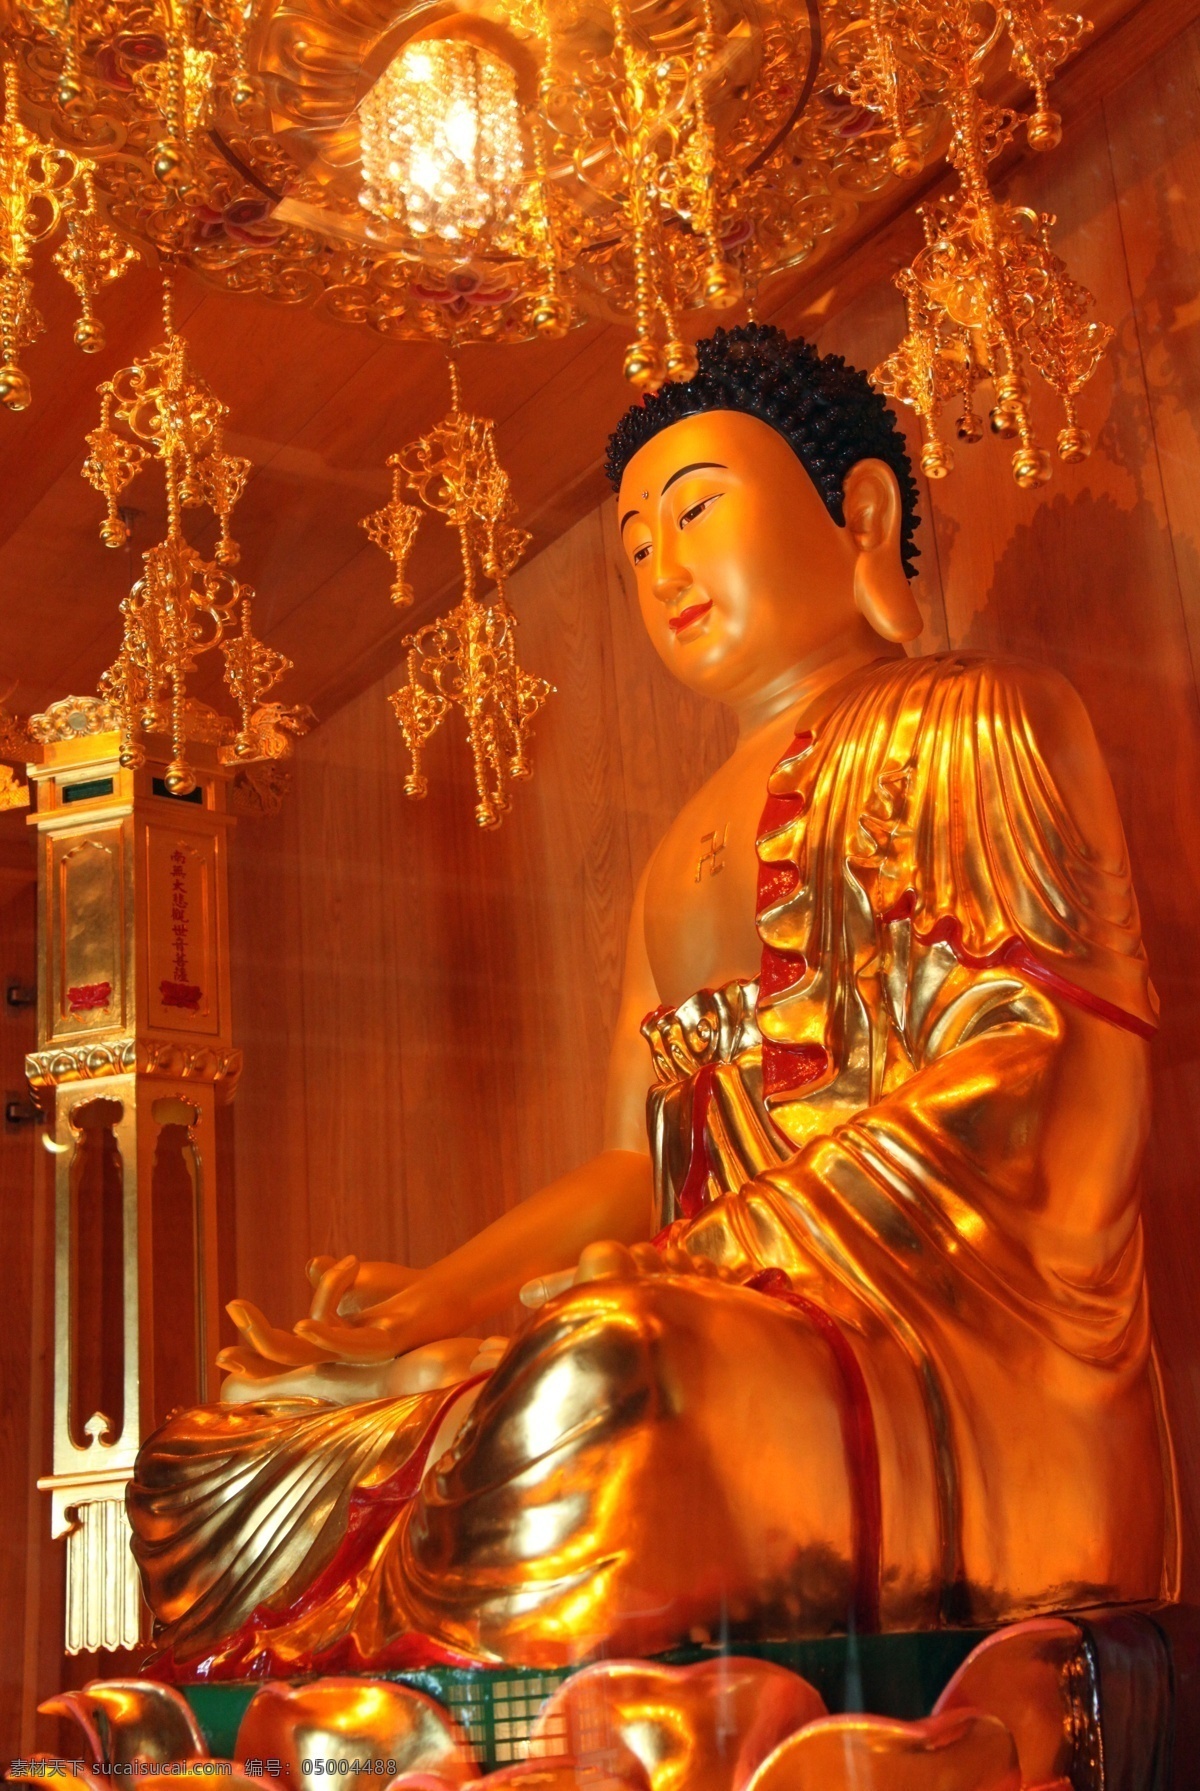 佛像 灯光 雕塑 佛教 如来佛祖 摄影图库 文化艺术 宗教信仰 艺术